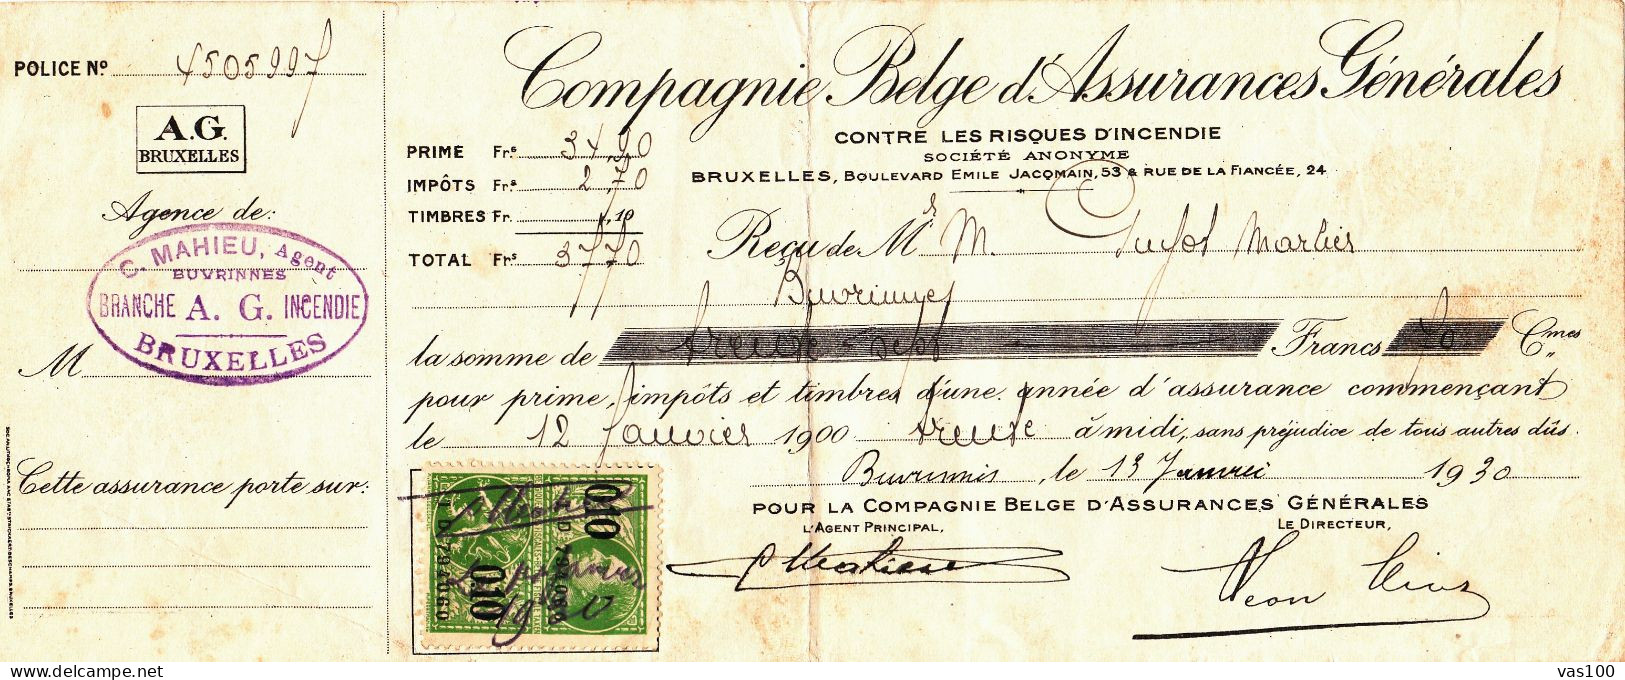 COMPAGNIE BELGE D'ASSURANCES GENERALES CONTRE LES RISQUES D'INCENDIE 1930 BELGIUM - Documenti